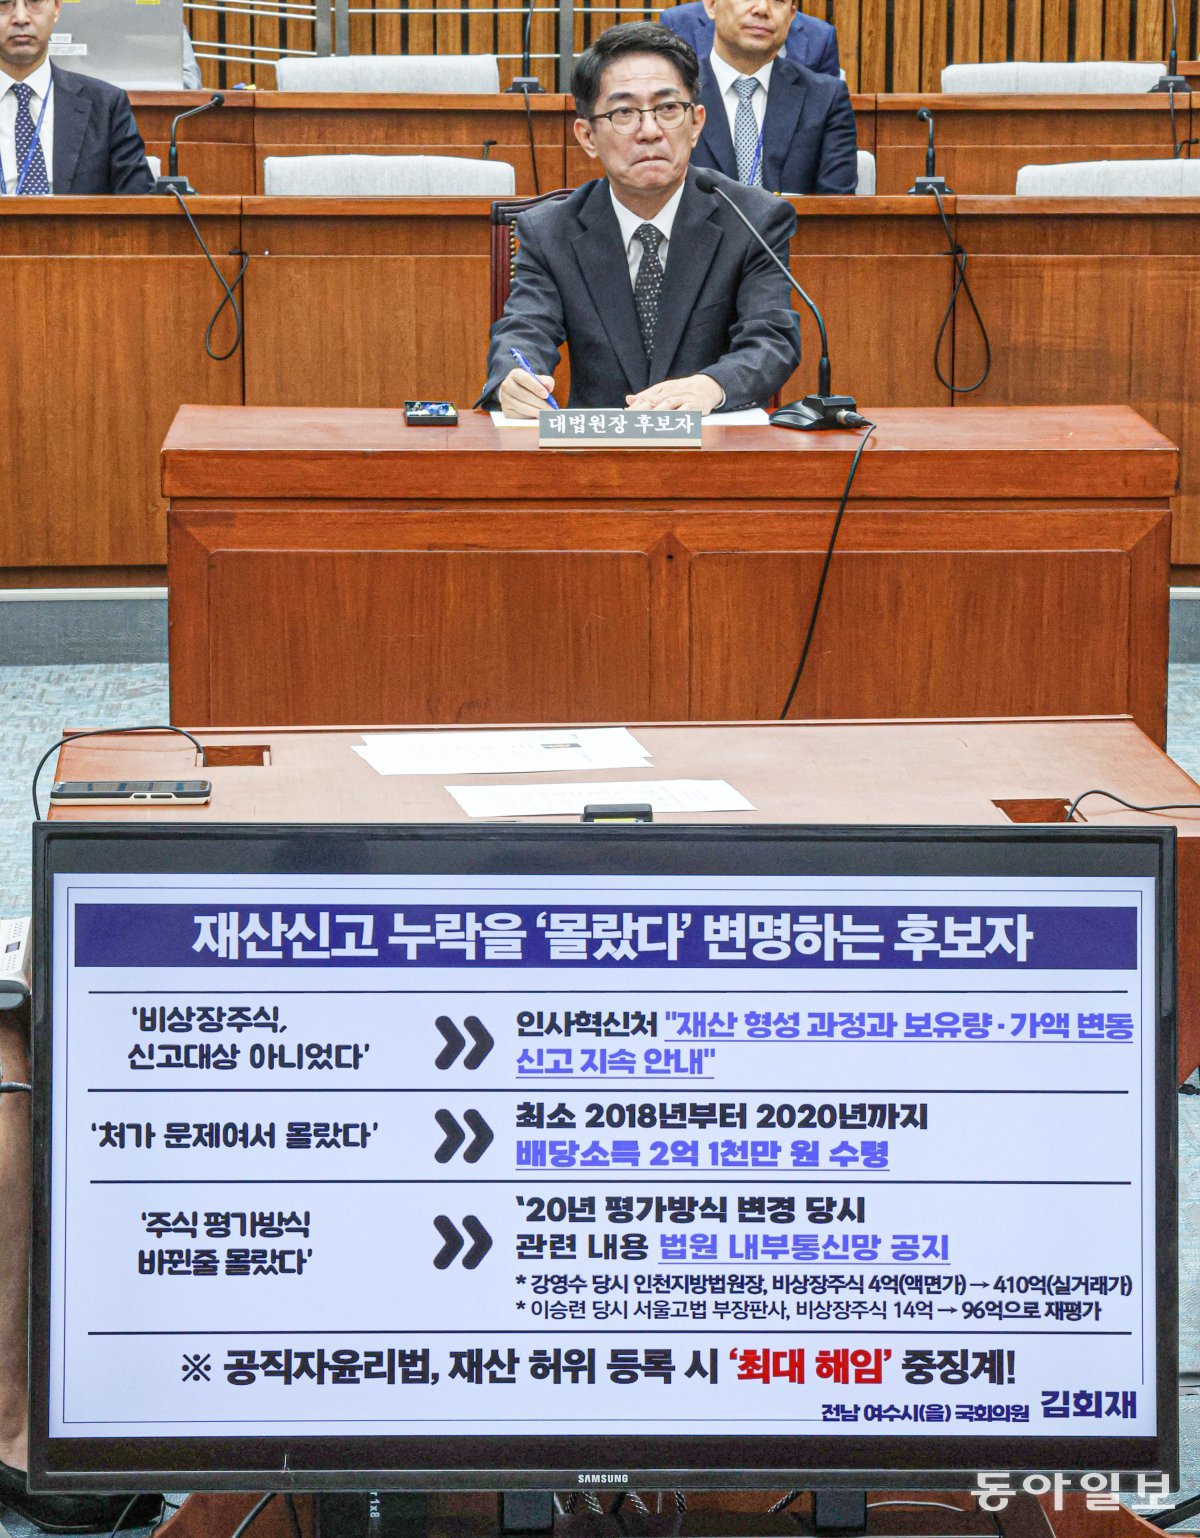 19일 이용균 대법원장 후보자가 더불어민주당 김희재 의원에게 재산신고 누락 관련 질의를 받고 있다. 박형기 기자 oneshot@donga.com